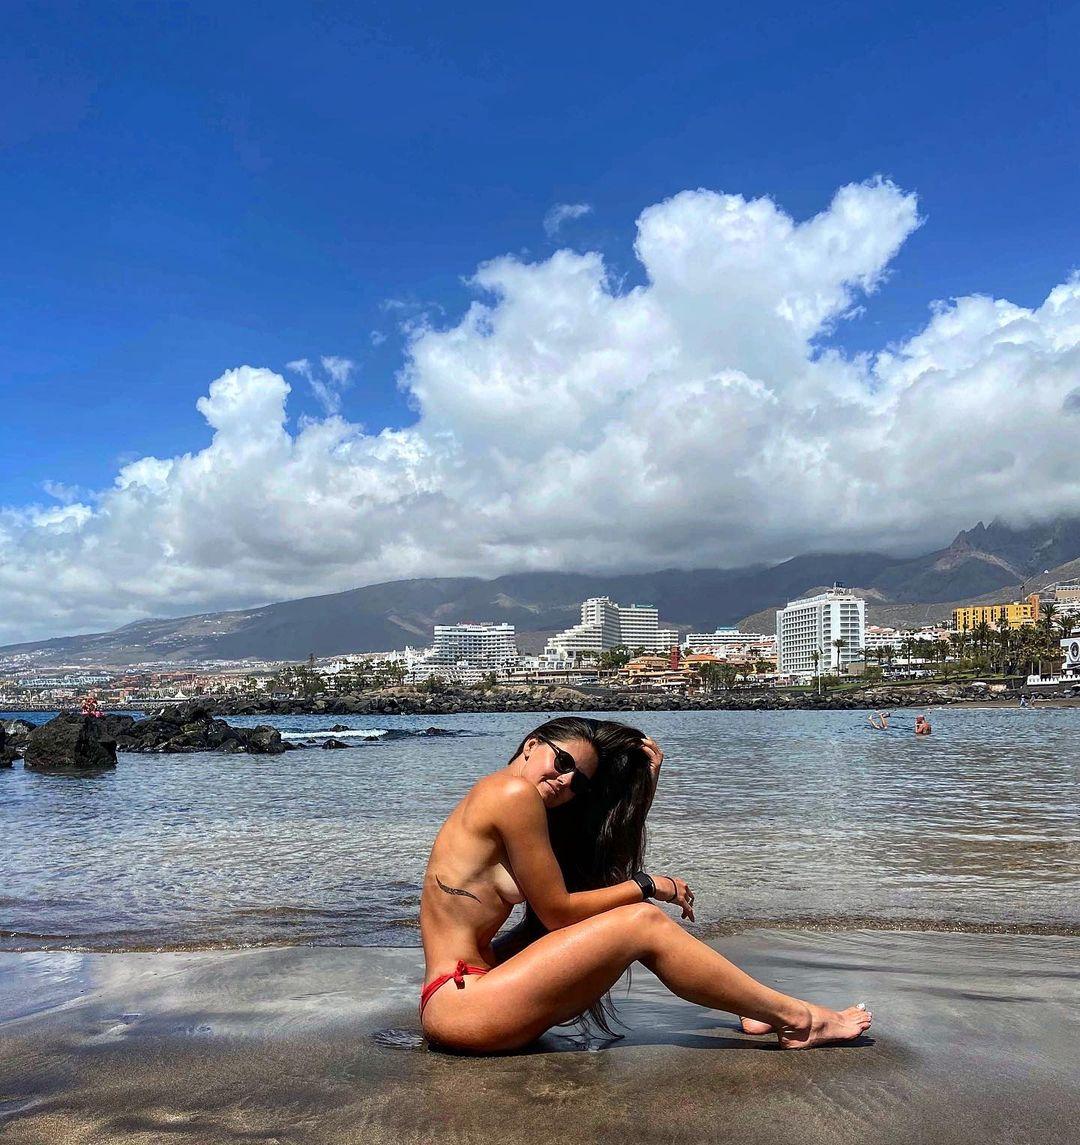 Alexandra Ianculescu basking in the sun at the beach.